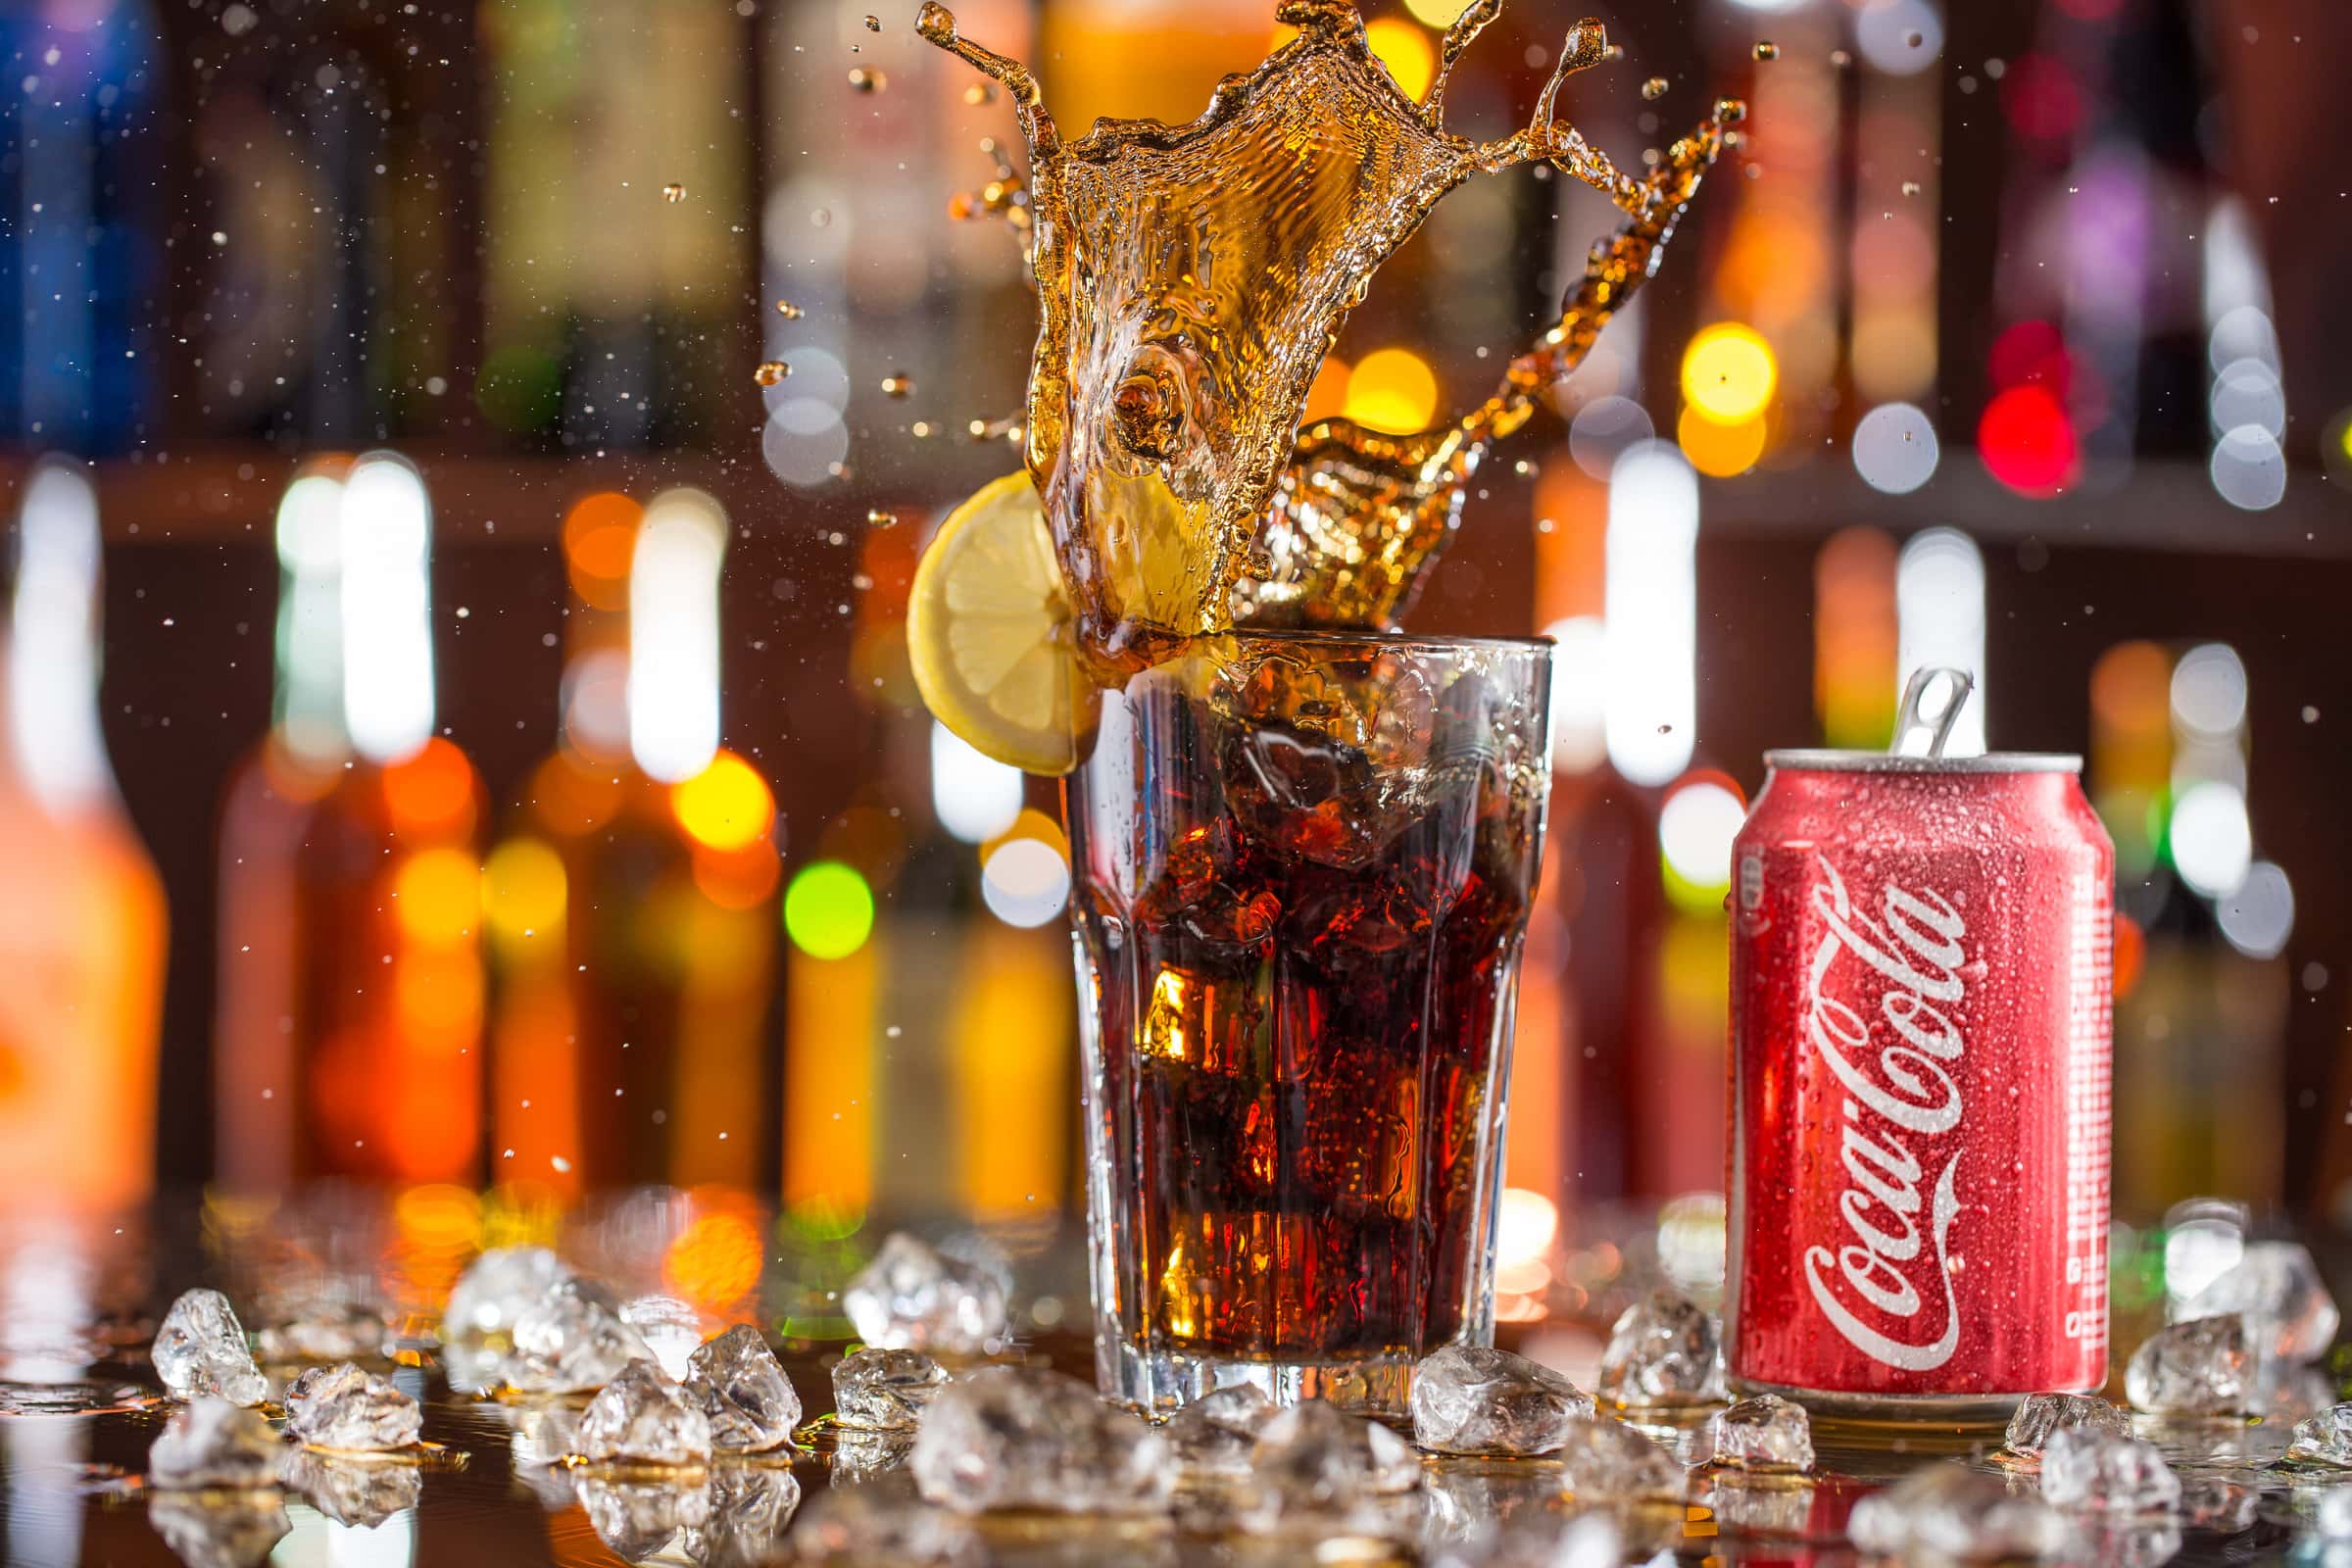 Svolta Coca Cola: In Arrivo la Coca Cola Alcolica!